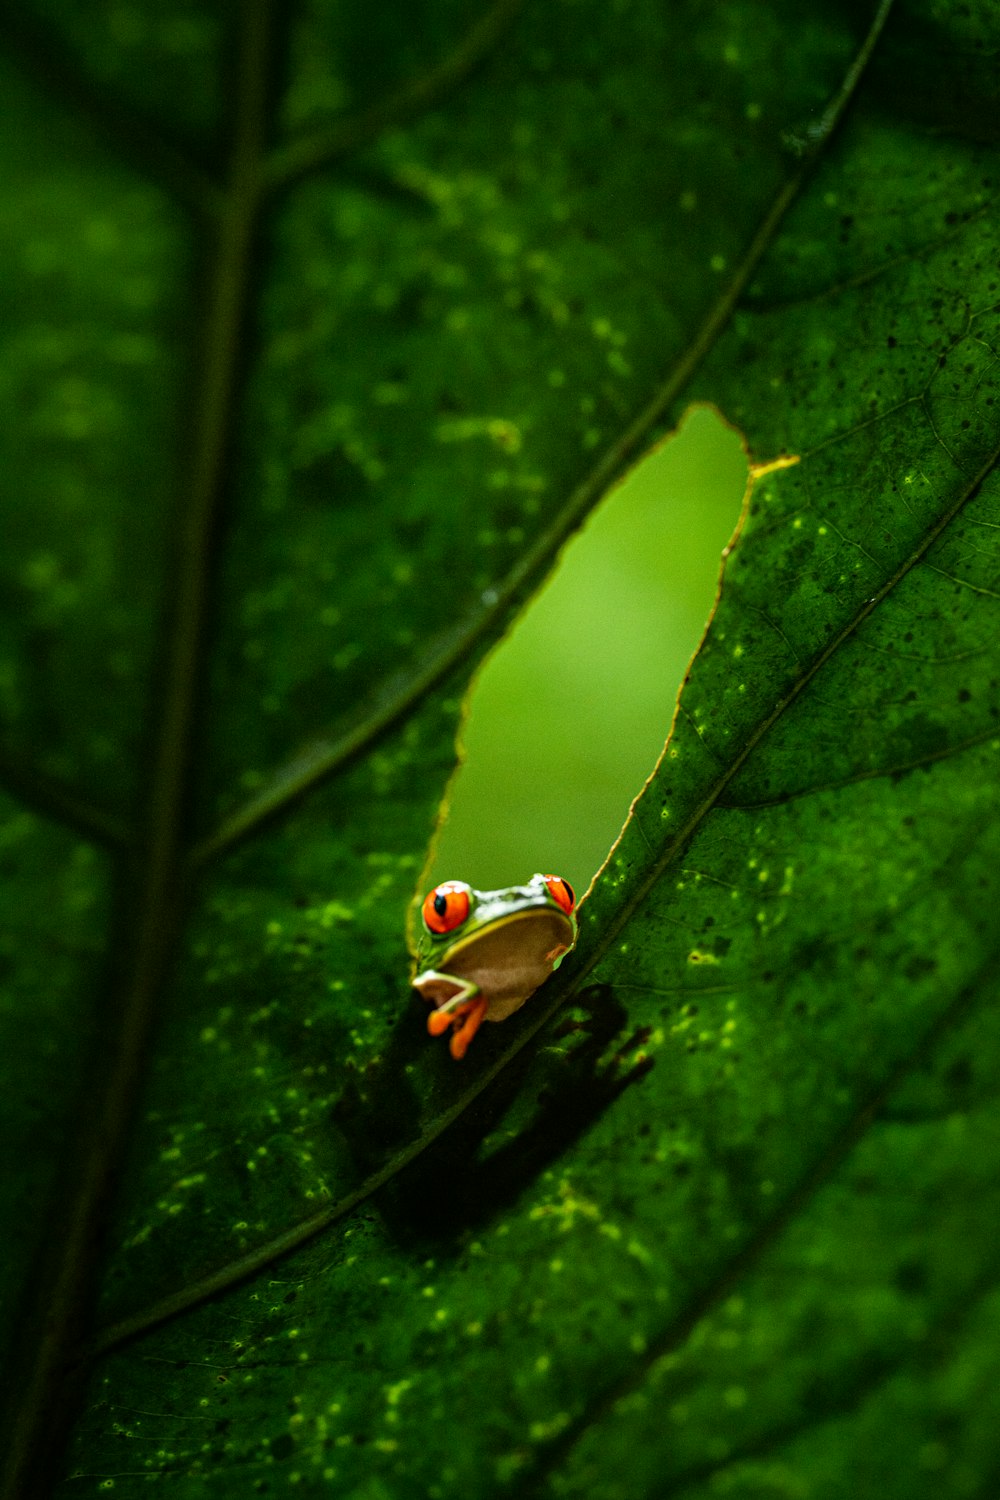 una raganella dagli occhi rossi seduta su una foglia verde